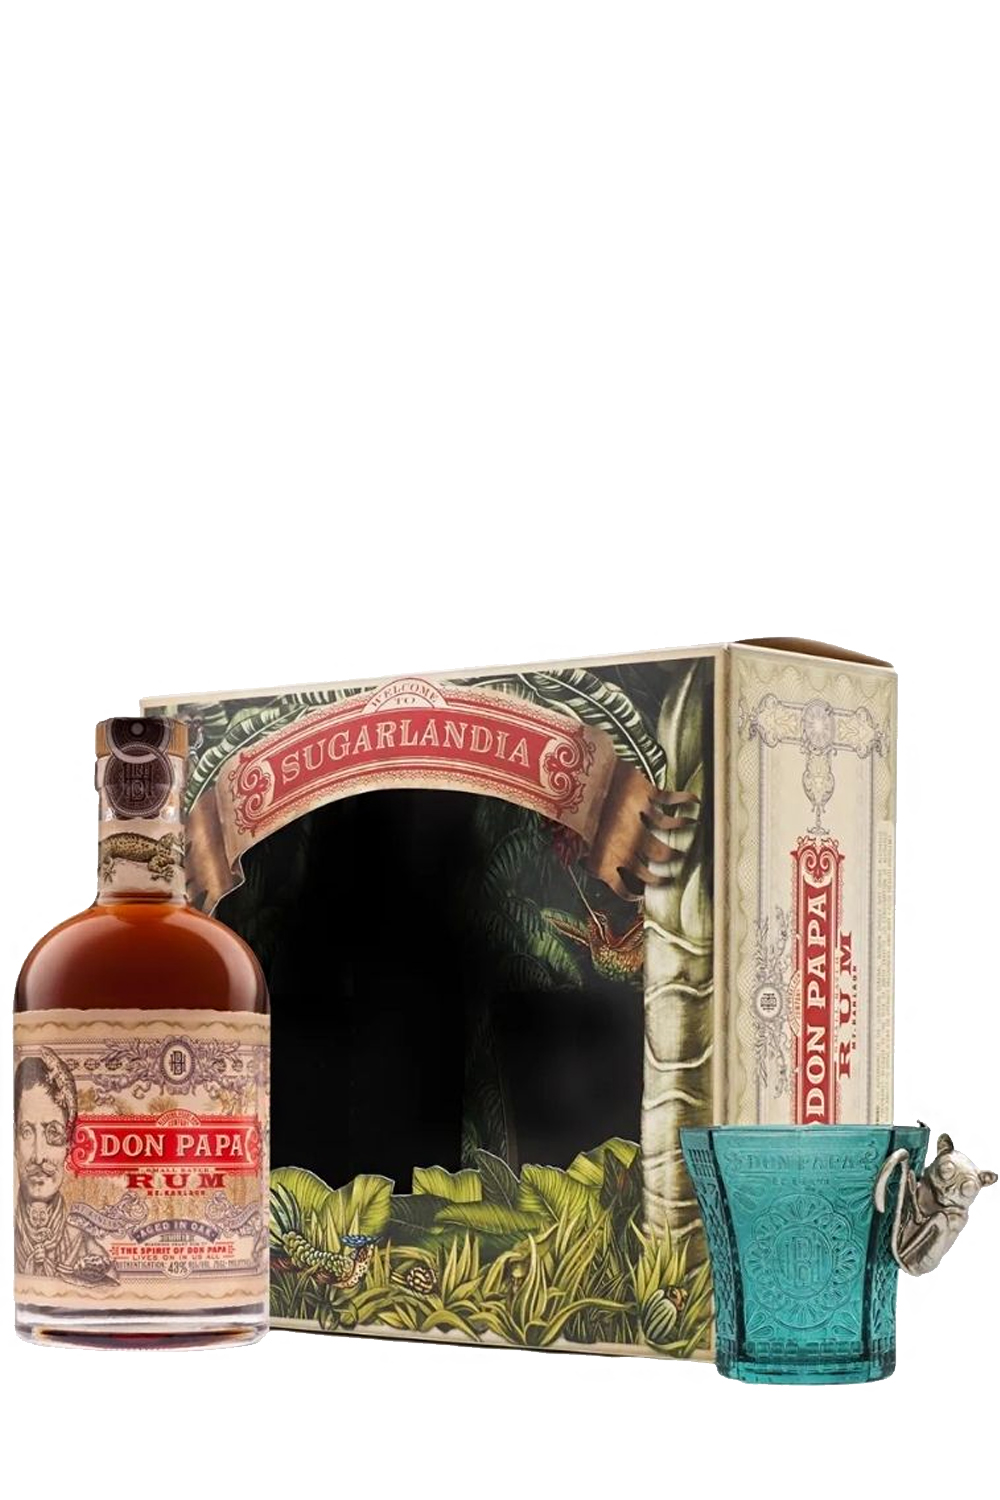 Don Papa Rum 7 Years Old 40% in Geschenkbox mit Glas - Getraenke-Handel.com  ist Ihr preiswerter Spirituosen Online